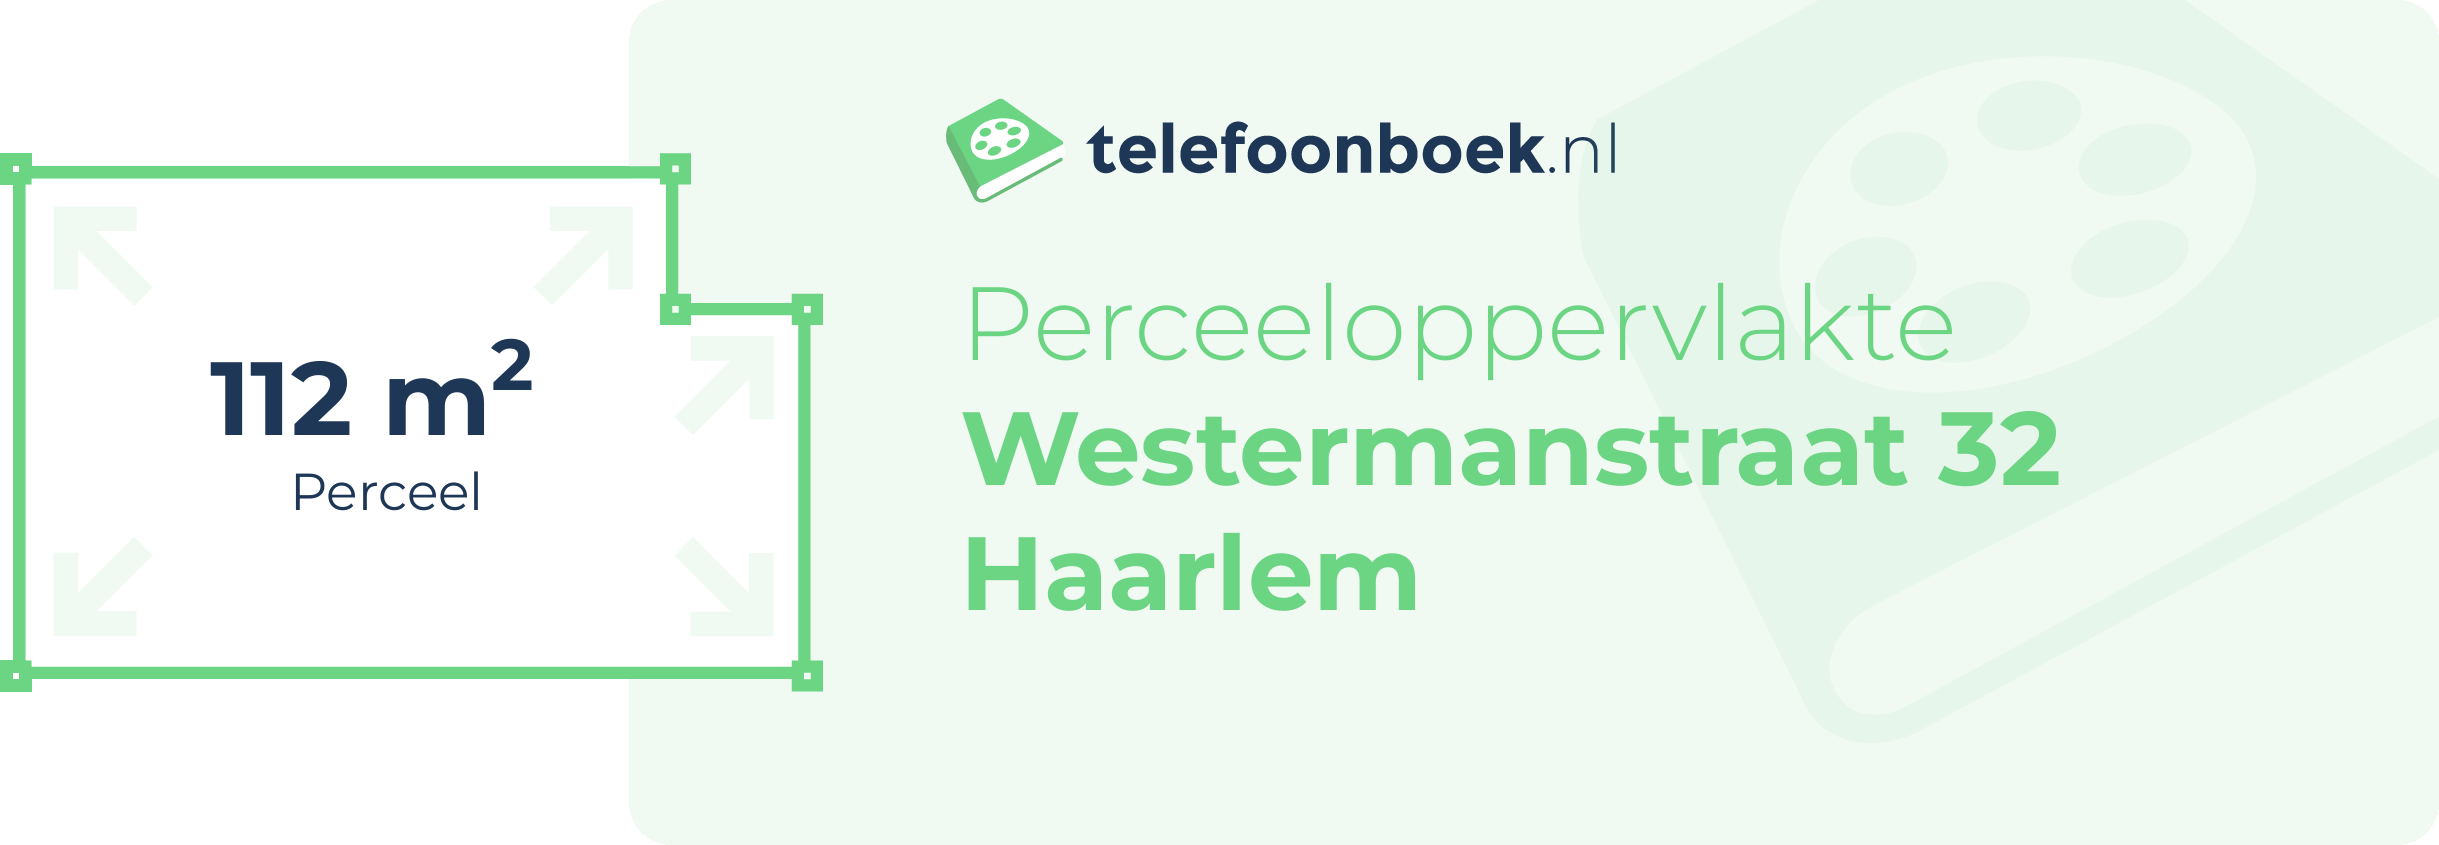 Perceeloppervlakte Westermanstraat 32 Haarlem